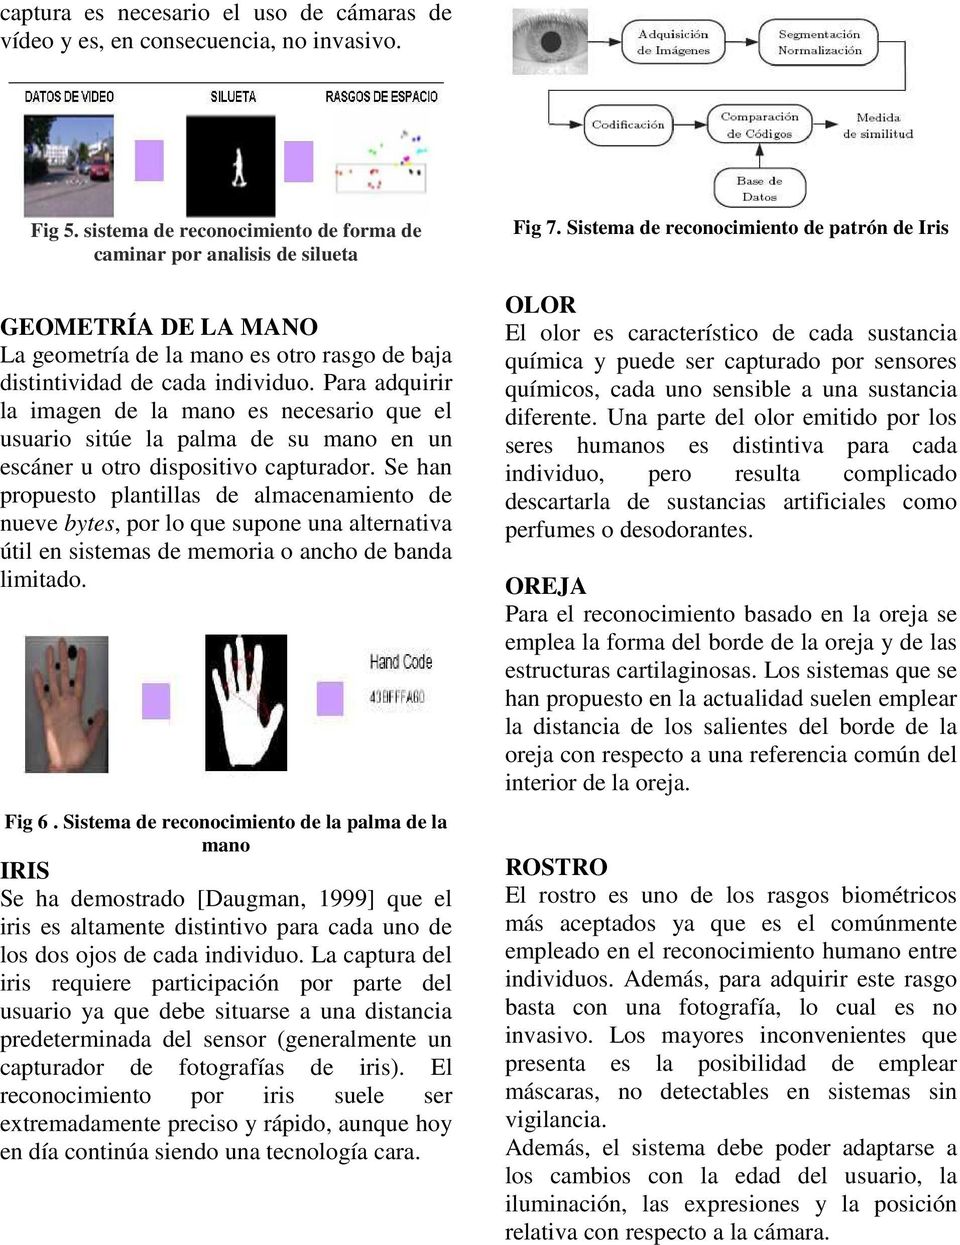 Para adquirir la imagen de la mano es necesario que el usuario sitúe la palma de su mano en un escáner u otro dispositivo capturador.